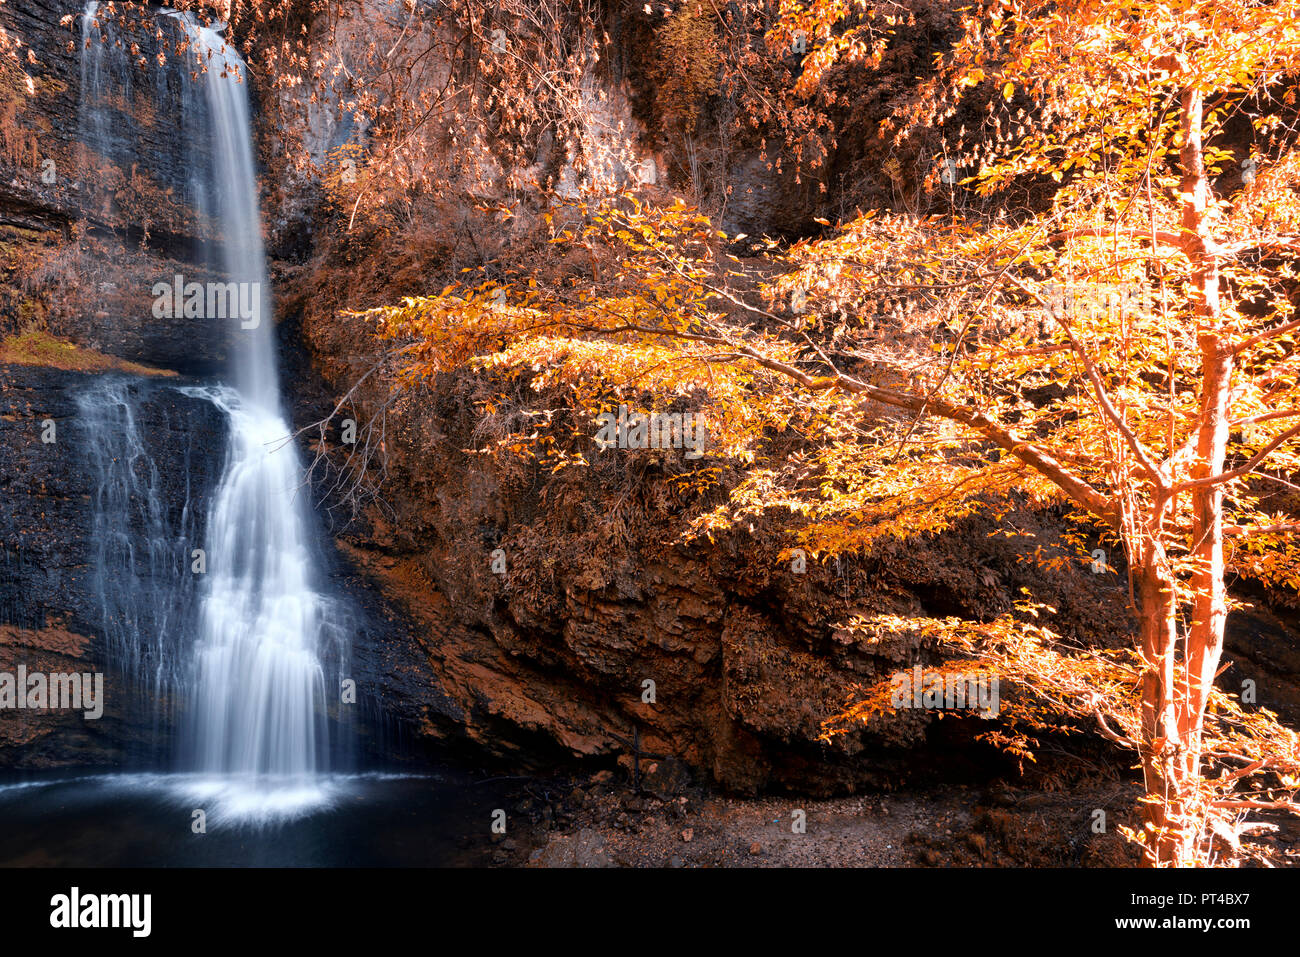 Schönen Wasserfall im Wald im Herbst Jahreszeit mit sonnigen Leuchten auf der Bäume Stockfoto